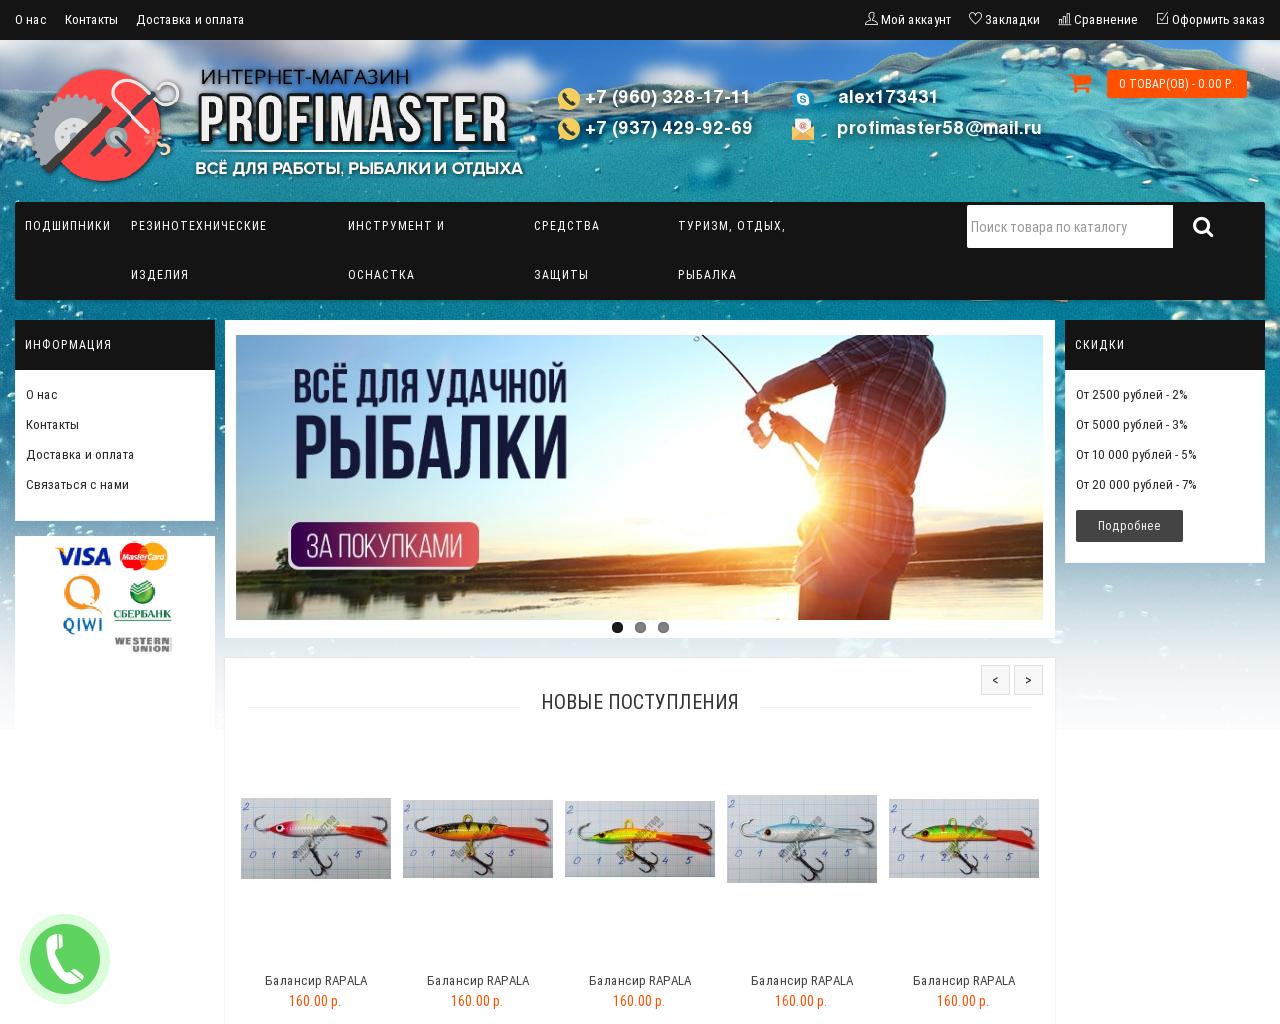 Изображение сайта profimaster58.ru в разрешении 1280x1024